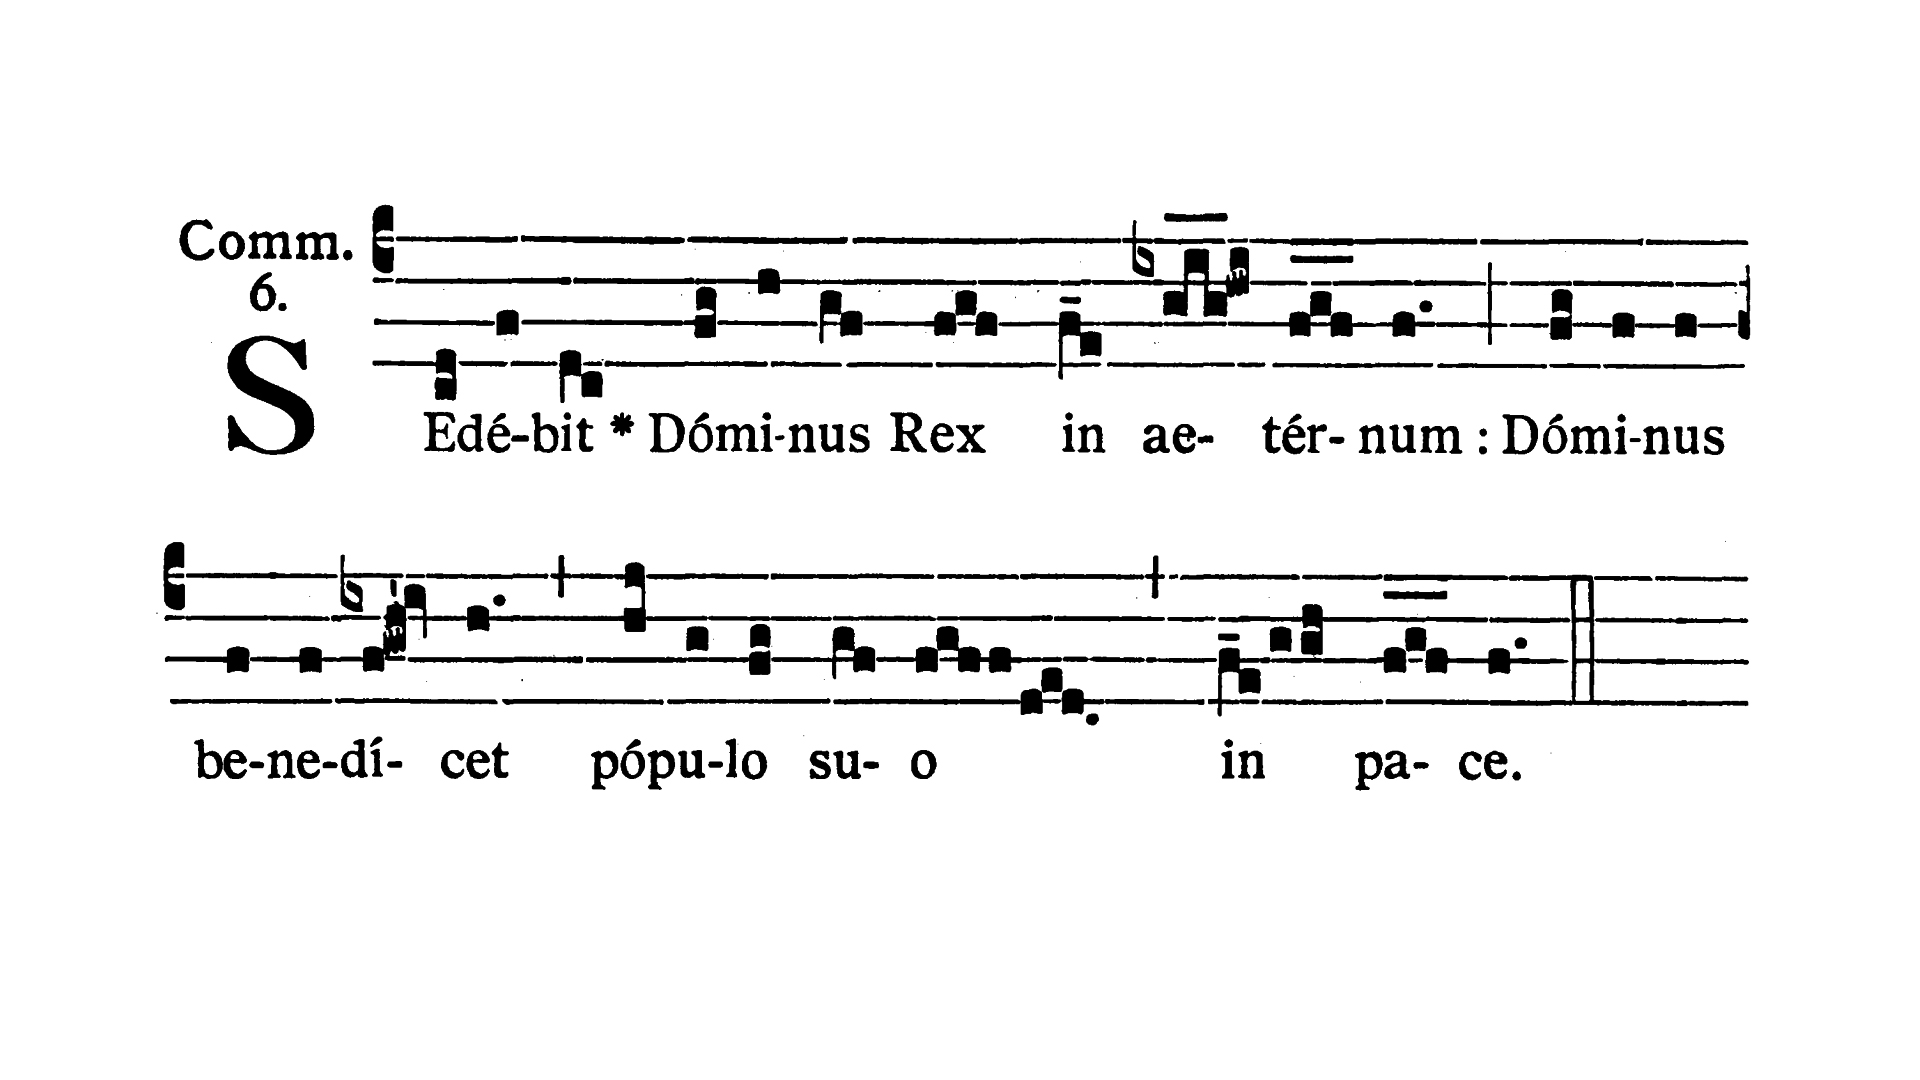 Domini Nostri Jesu Christi Regis - Communio (Sedebit Dominus Rex)